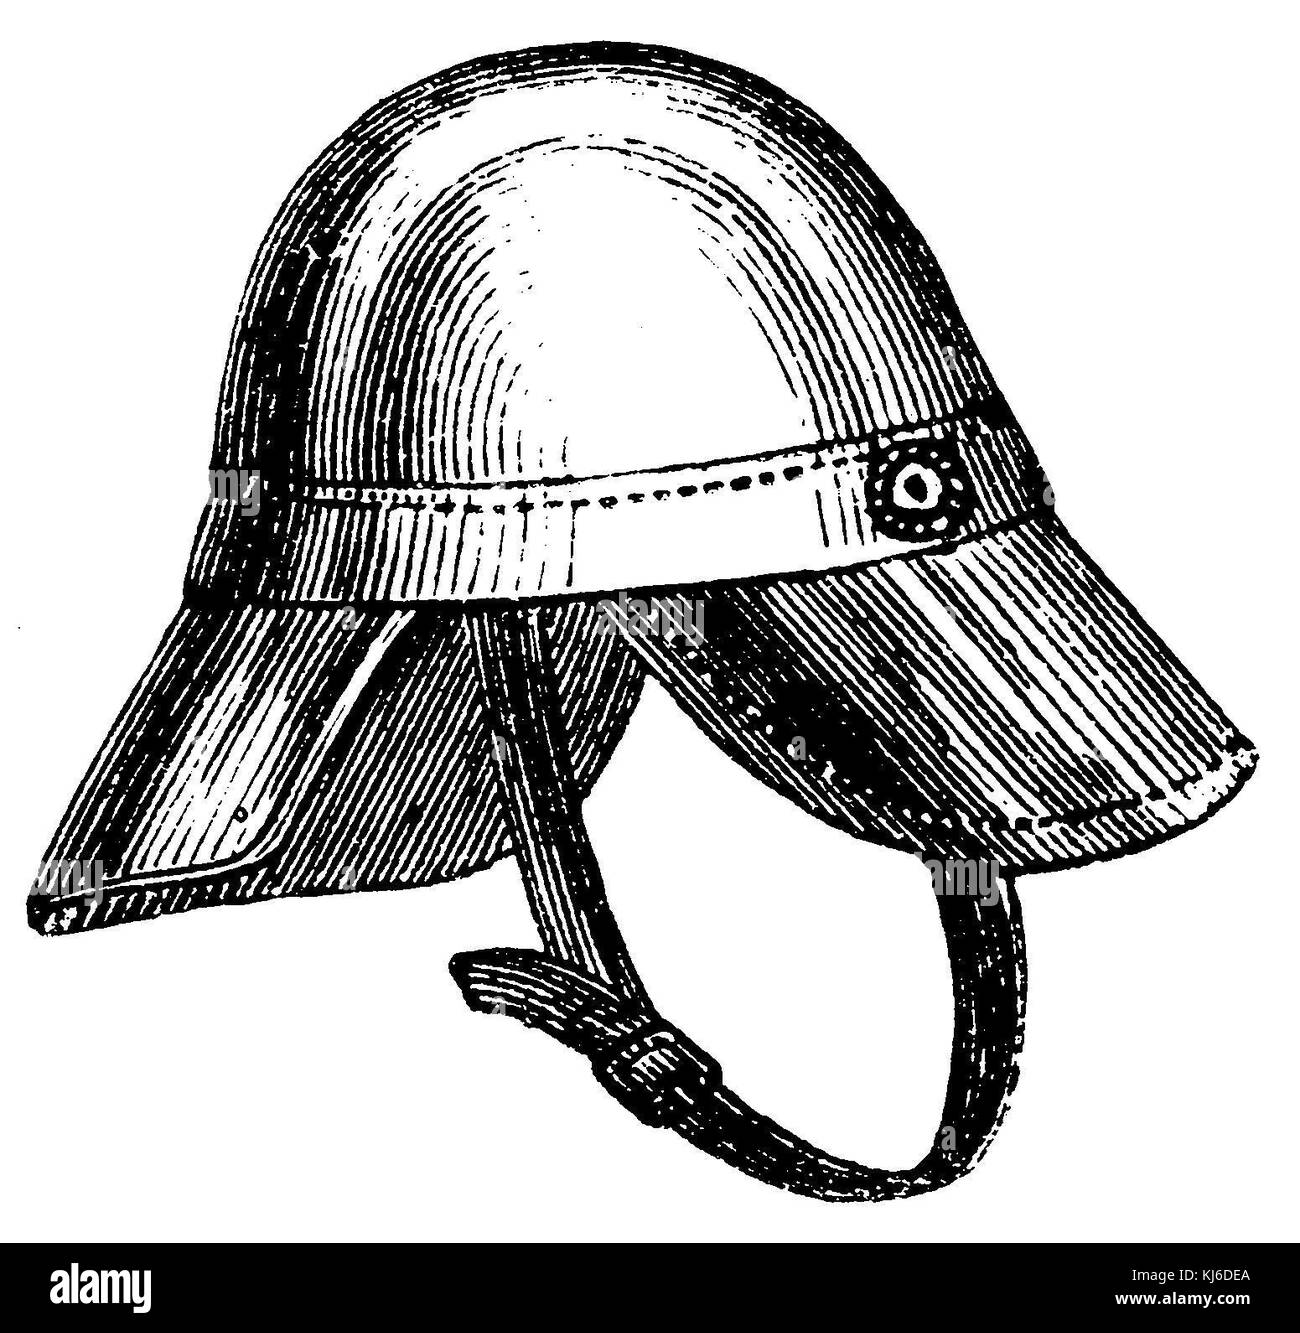 Helm of the Leipzig fire brigade (Helm der Leipziger Feuerwehr) Stock Photo